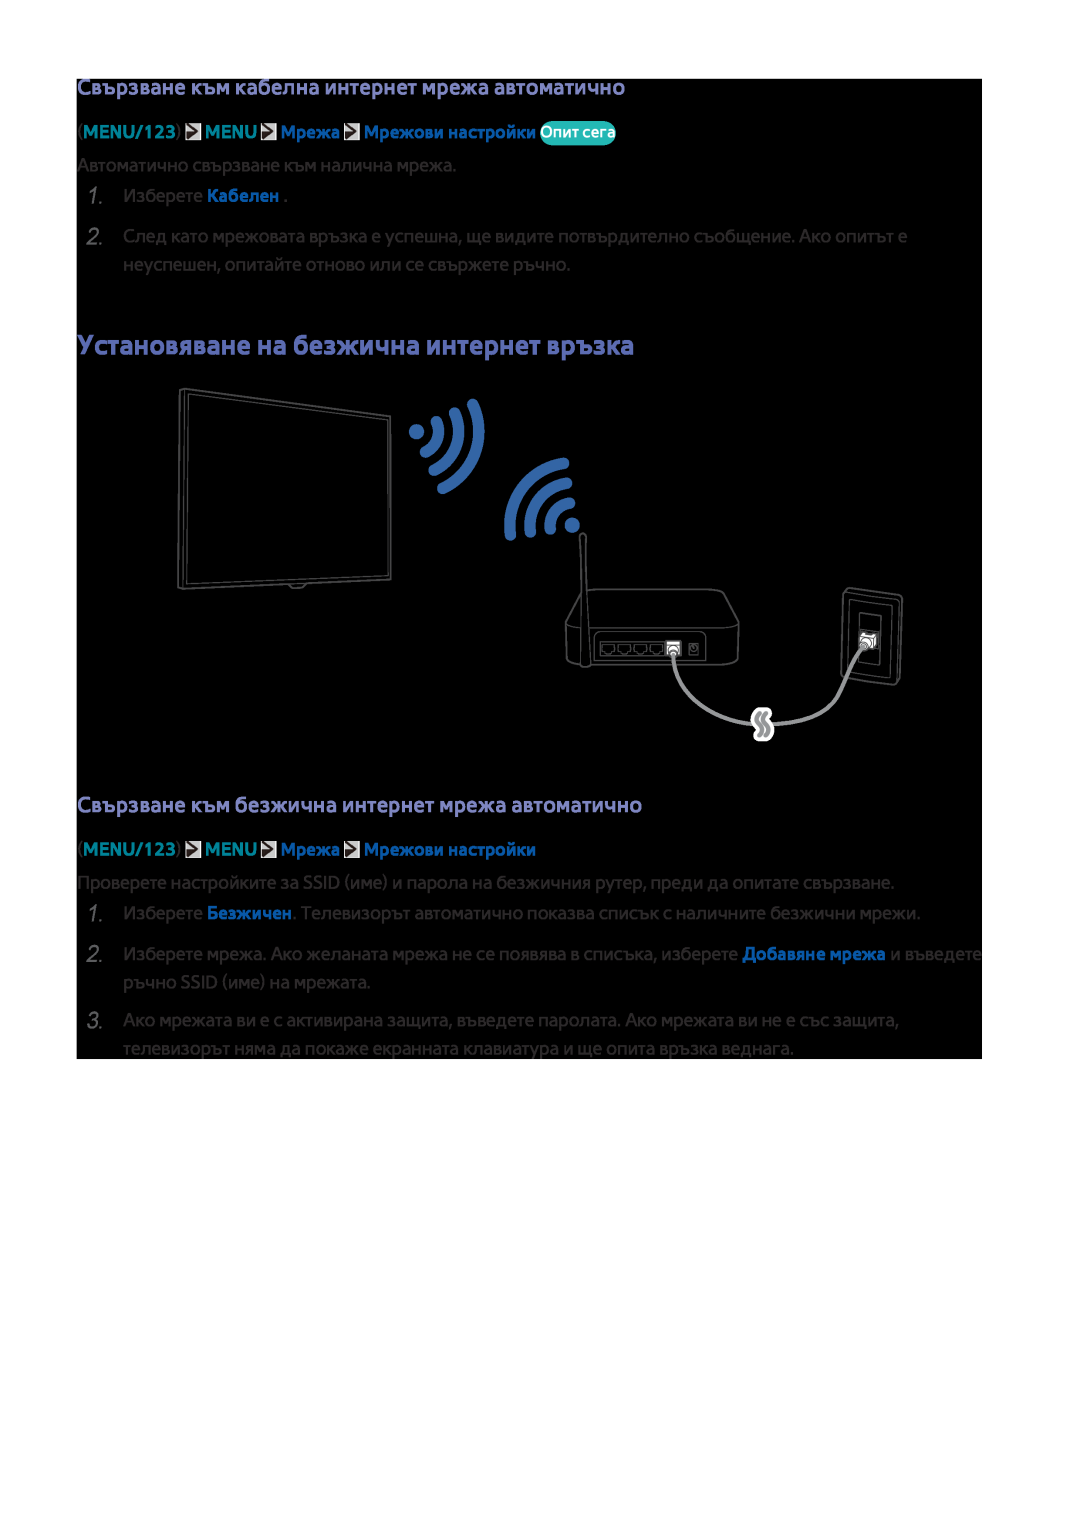 Samsung UE65JU6000WXXH manual Установяване на безжична интернет връзка, Свързване към кабелна интернет мрежа автоматично 